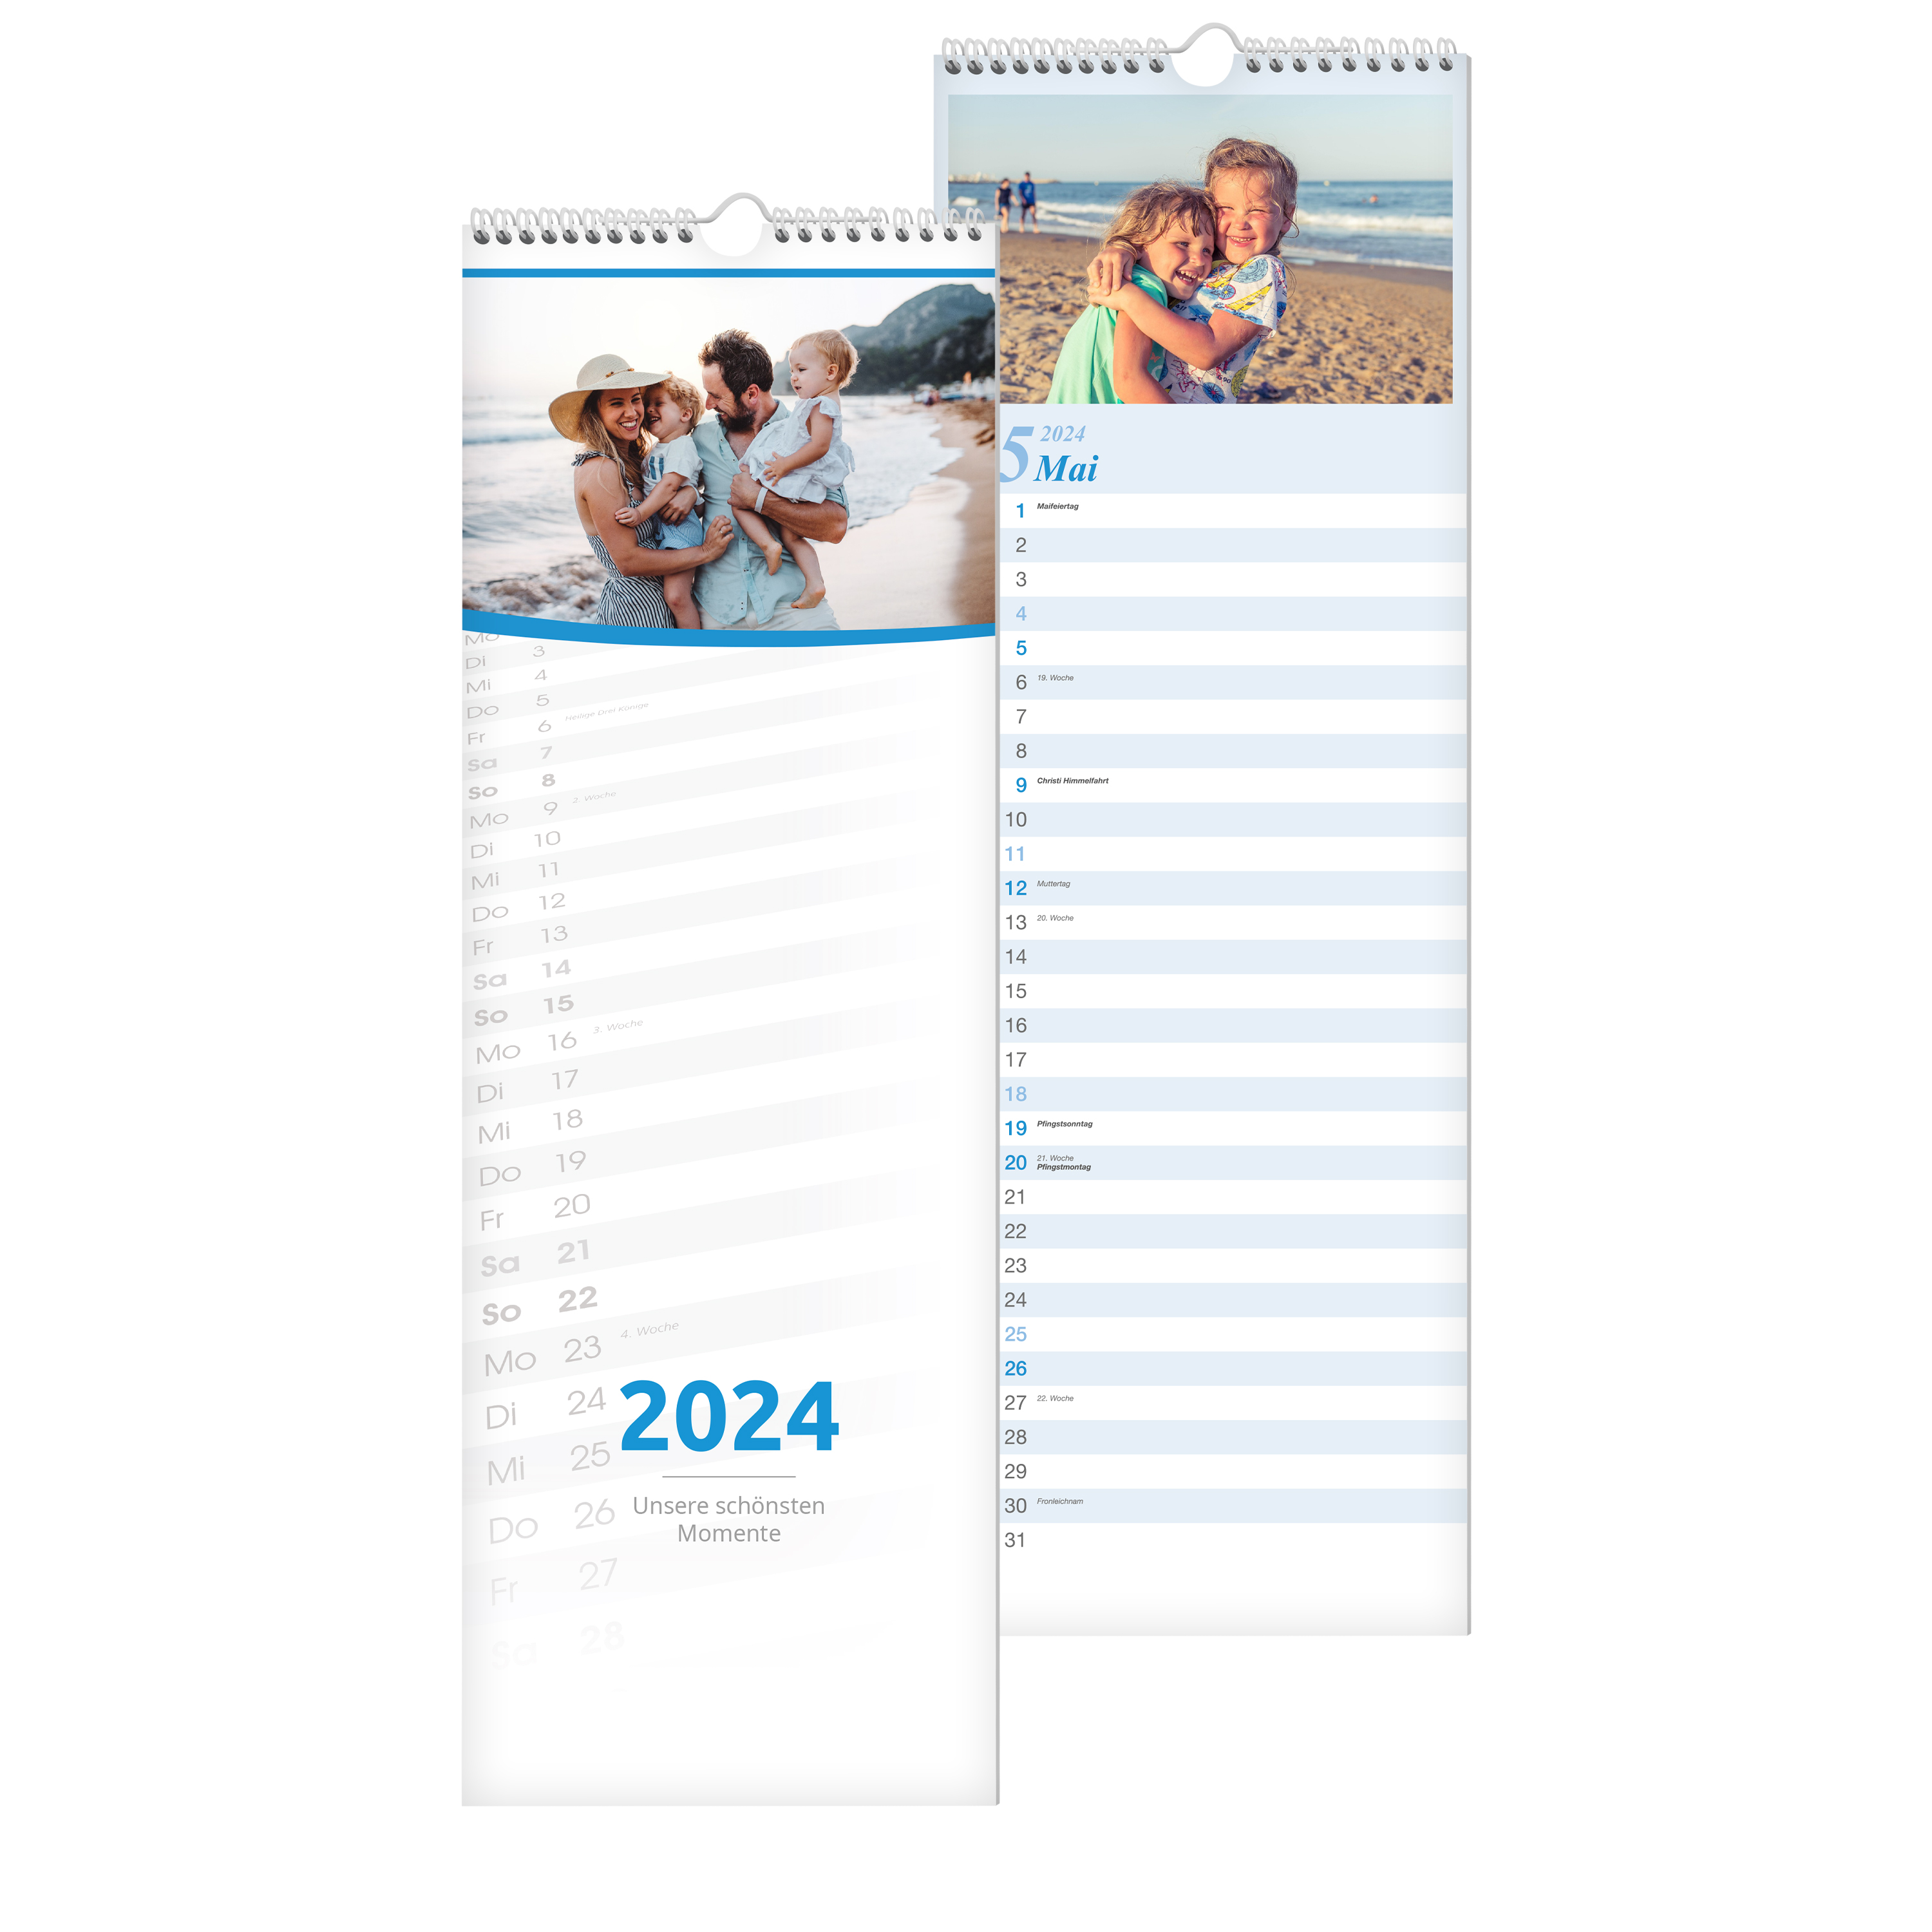 Fotokalender 2024 - Kalender mit Fotos & Text selbst gestalten